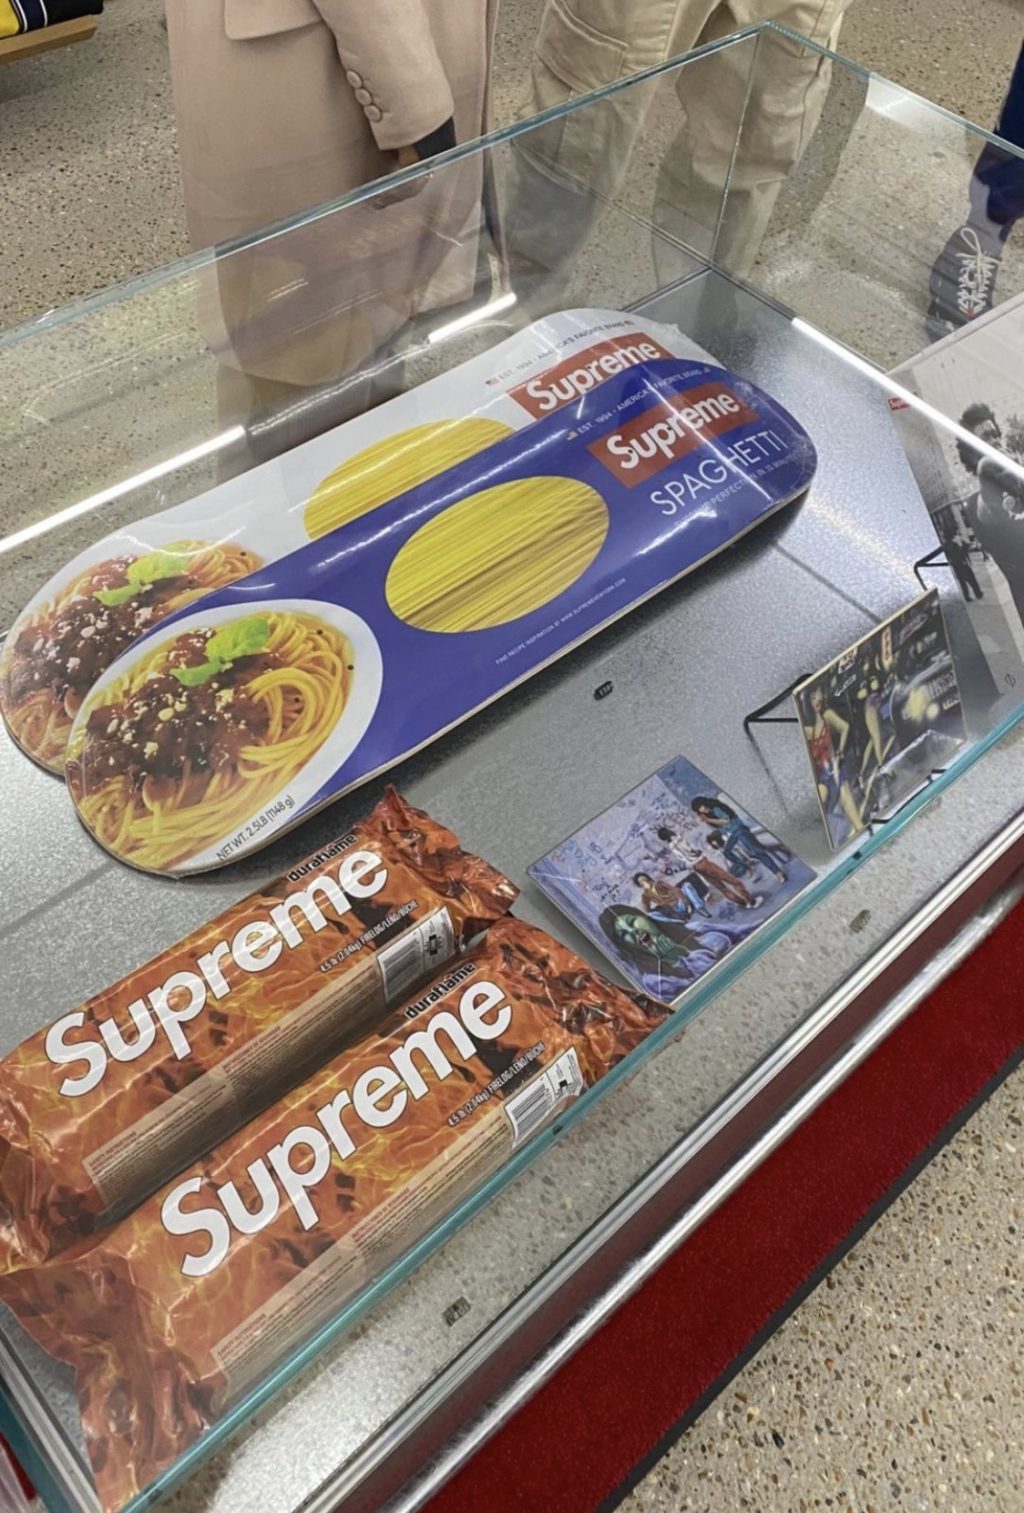 supreme-online-store-20211113-week12-release-items-look